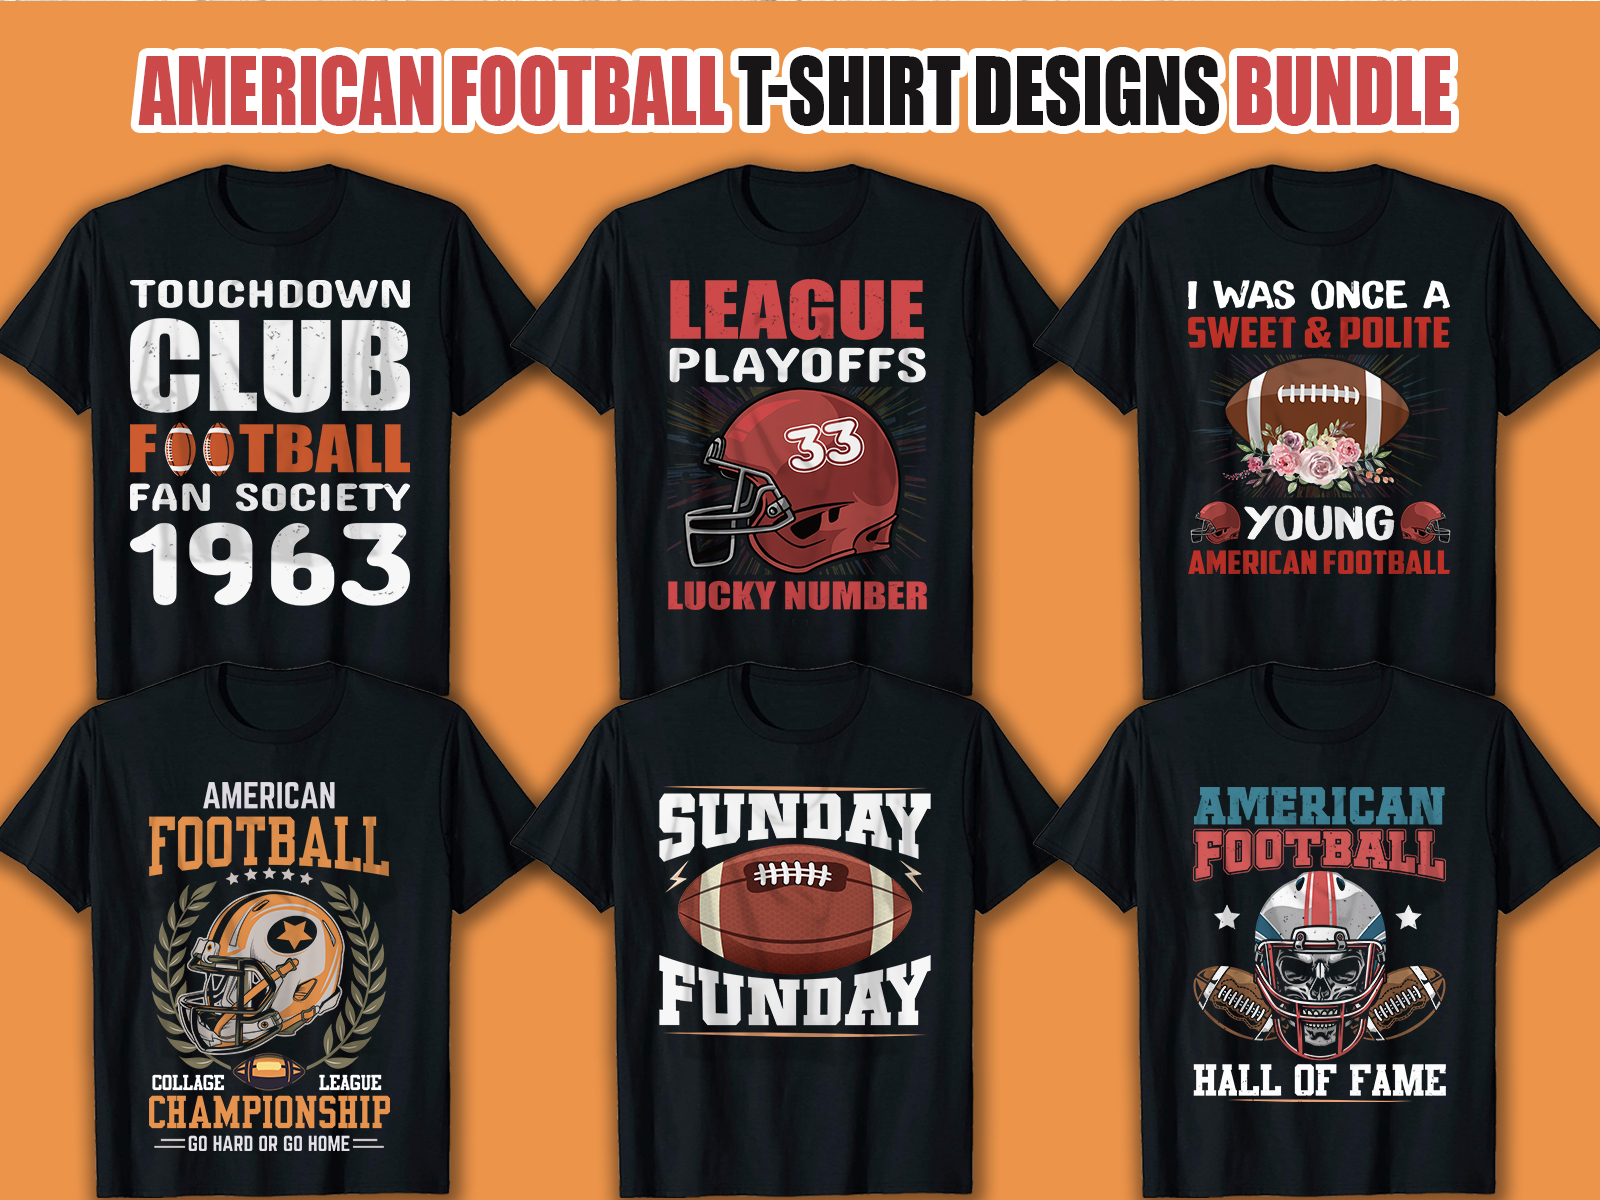 Udgangspunktet korruption Zealot America Football T Shirt Design Bundle by Ahmed Rasel on Dribbble